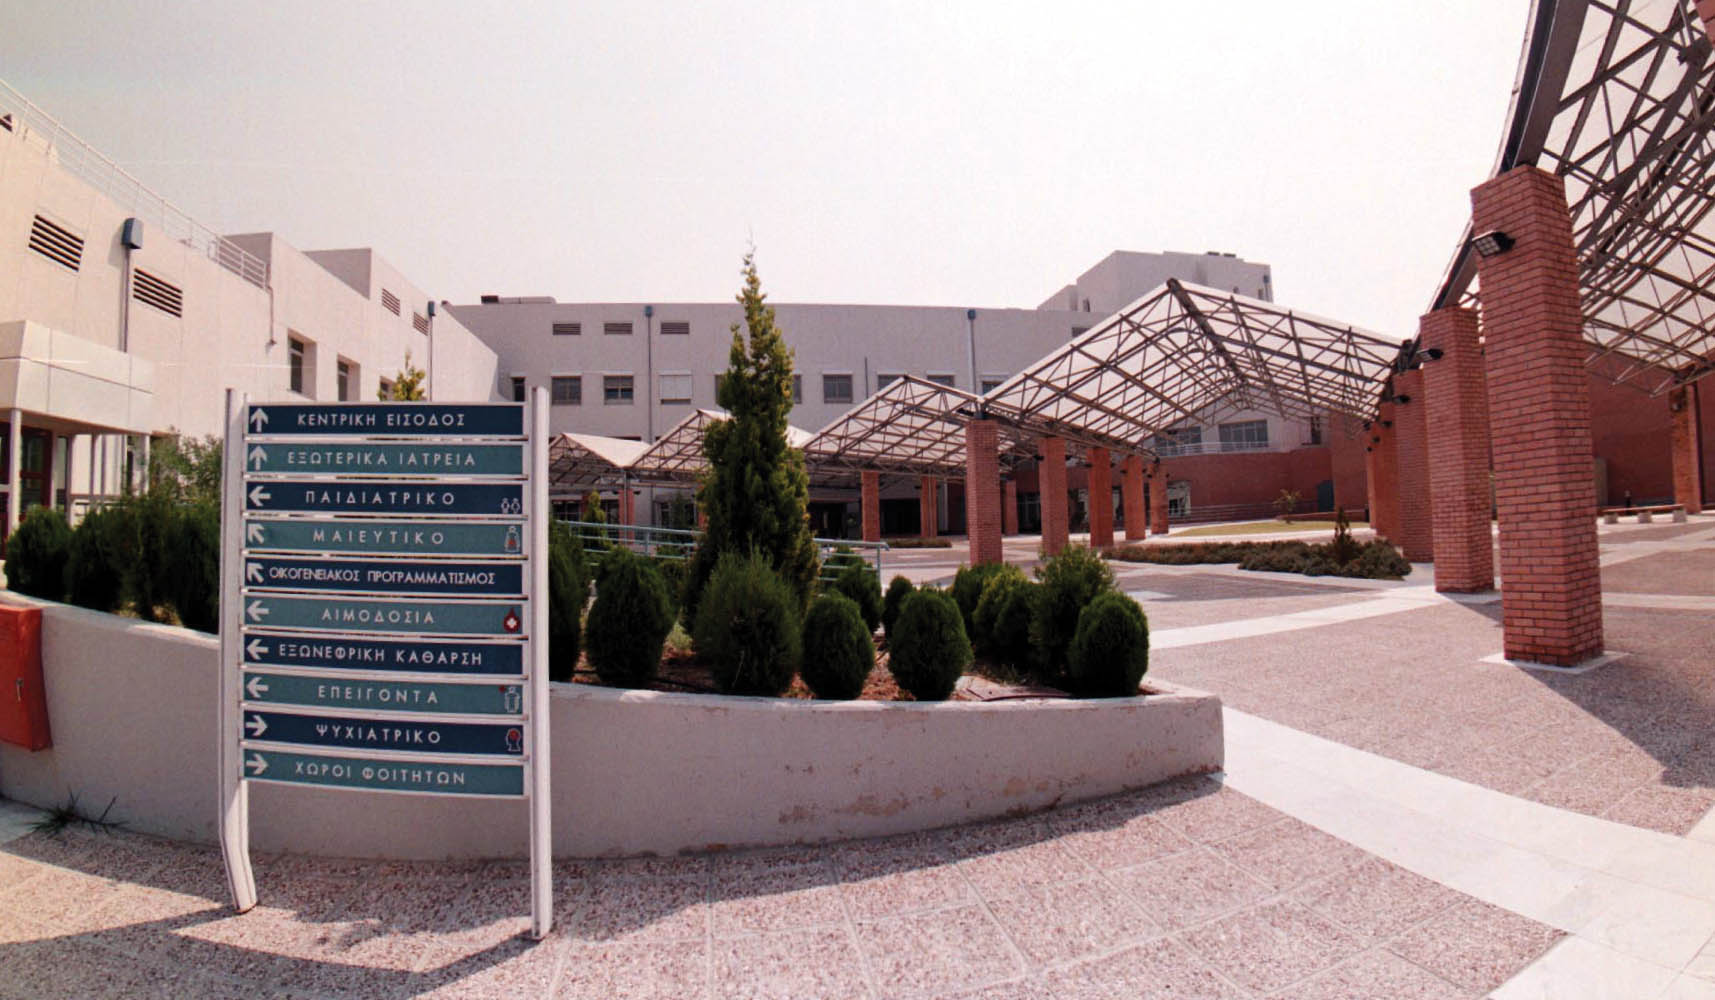 Το επικίνδυνο μικρόβιο «Λεγιονέλλα» εντοπίστηκε στο δίκτυο ύδρευσης του Νοσοκομείου «Παπαγεωργίου» Θεσσαλονίκης